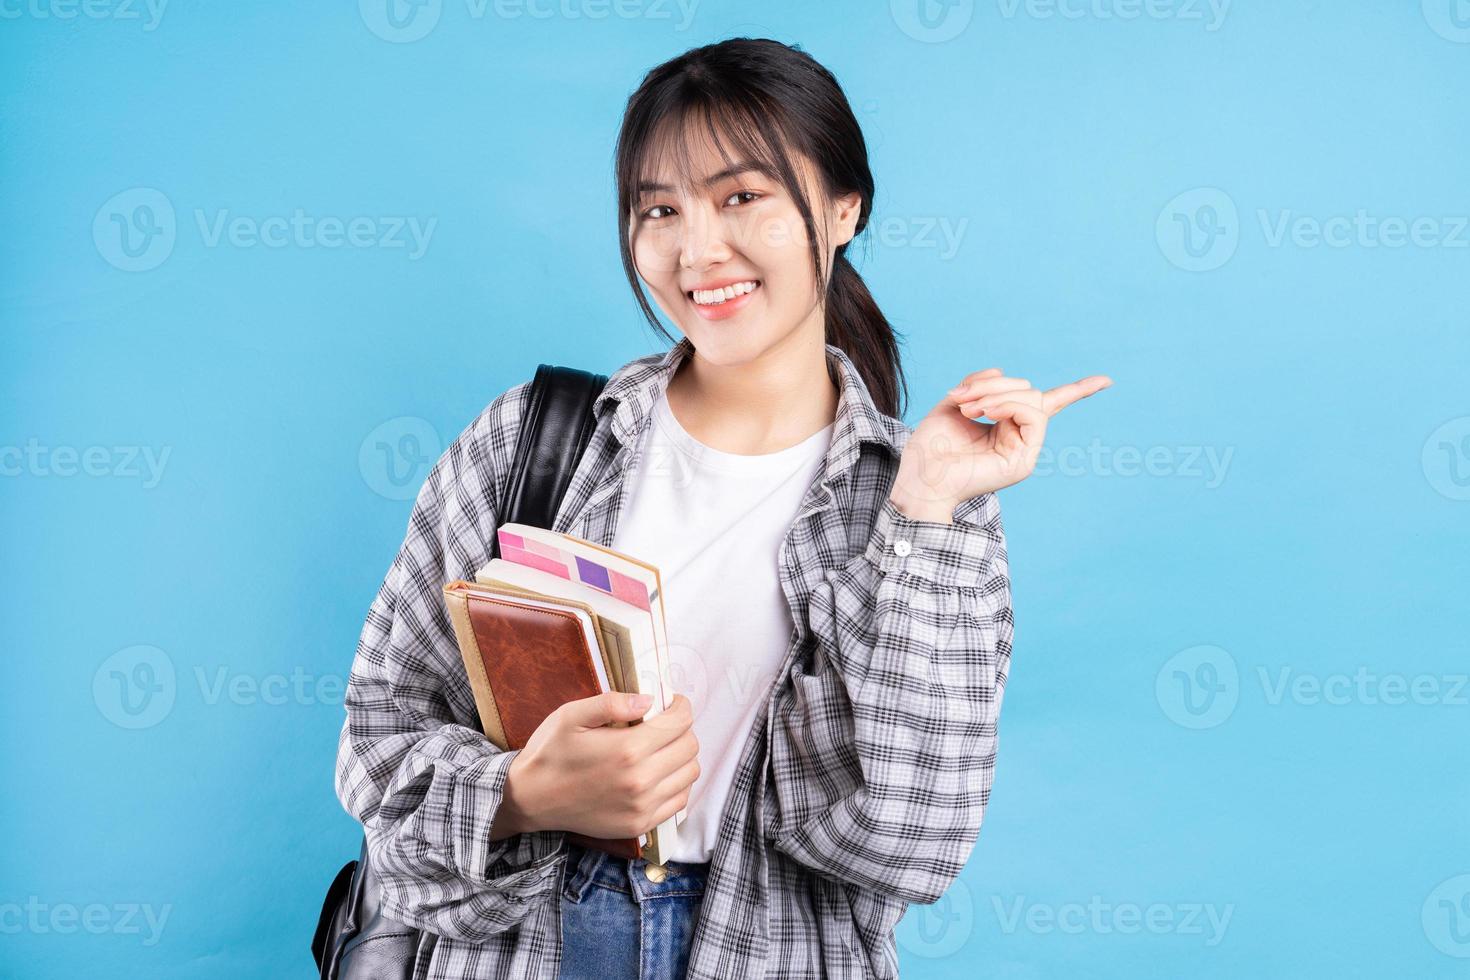 Aziatische vrouwelijke student met speelse uitdrukking op blauwe achtergrond foto